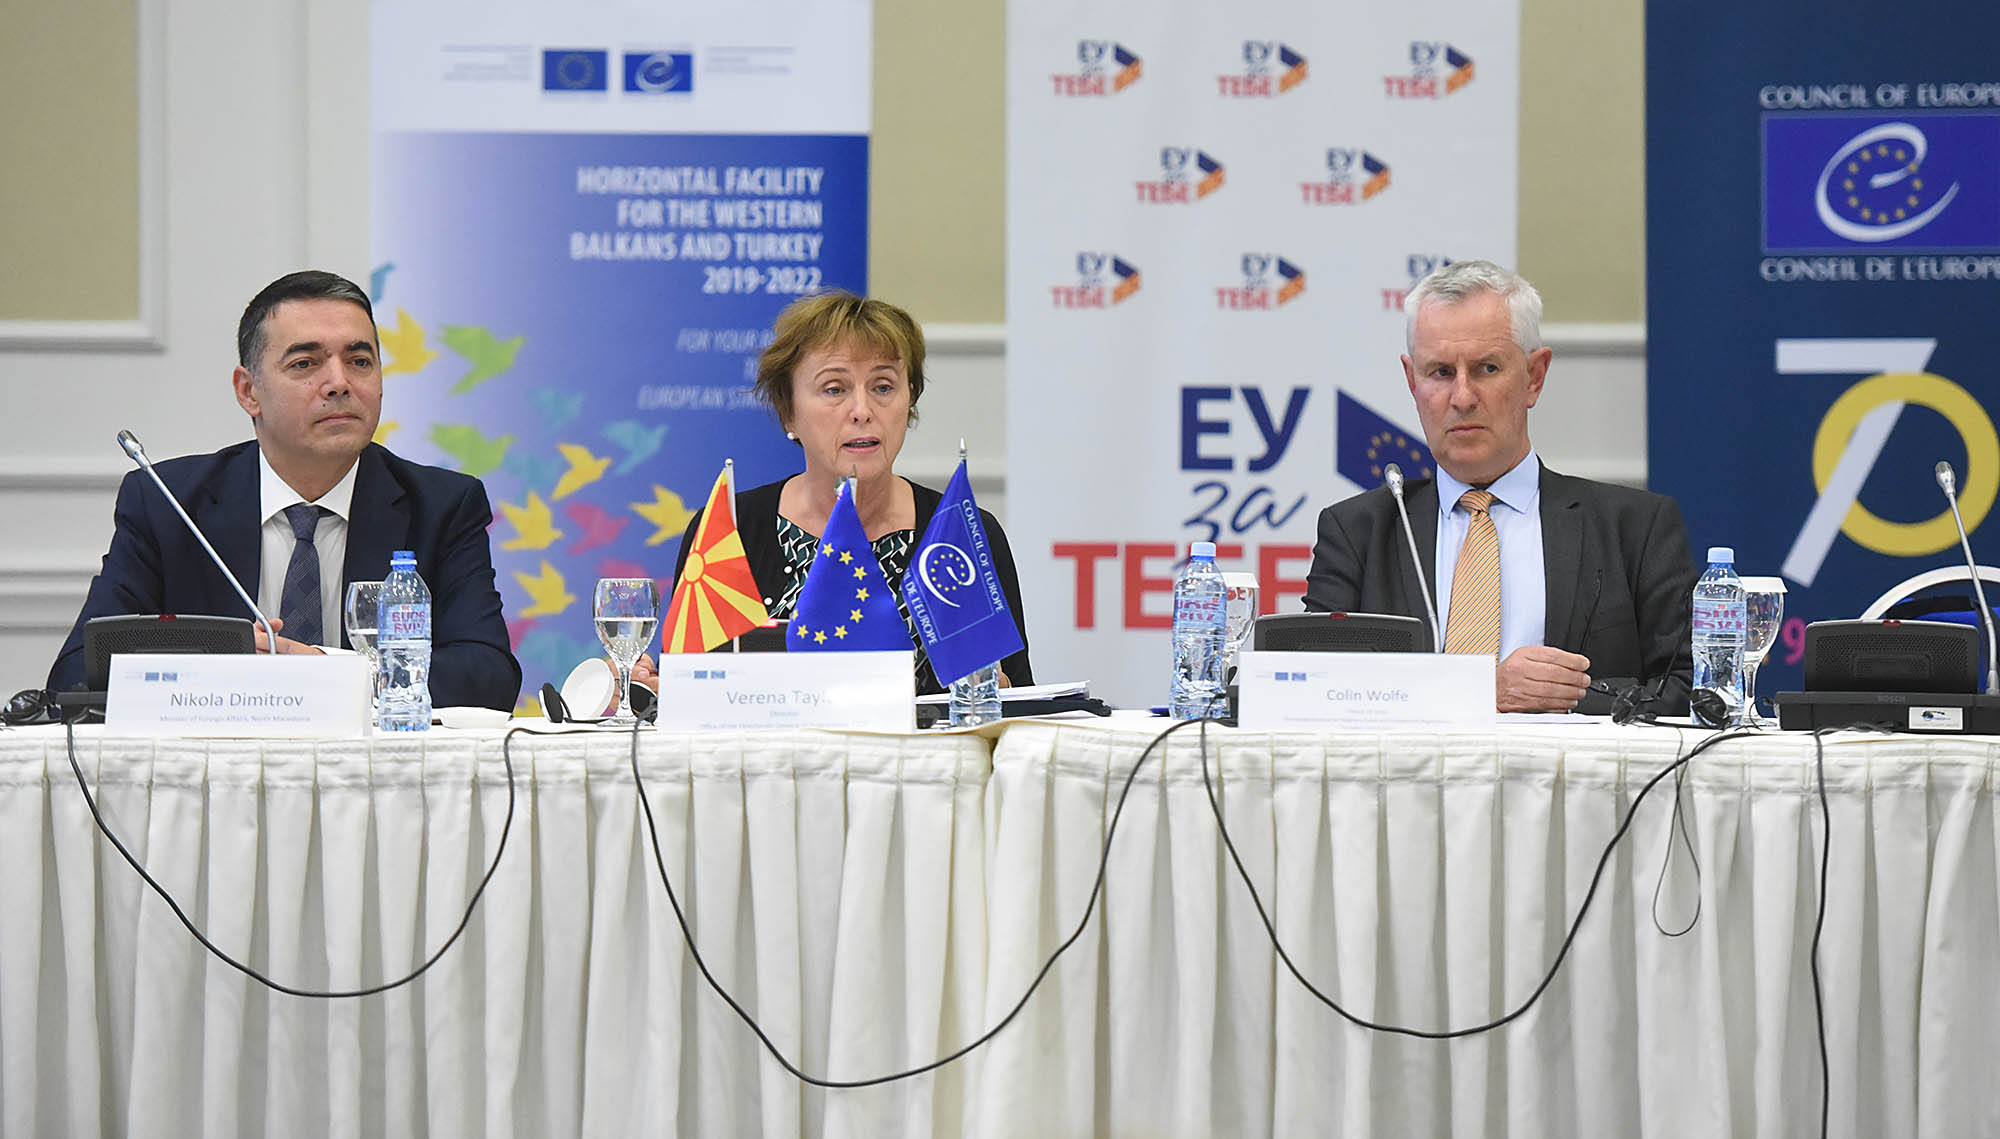 Evropska unija i Vijeće Evrope nastavljaju da podržavaju reforme na Zapadnom Balkanu i u Turskoj